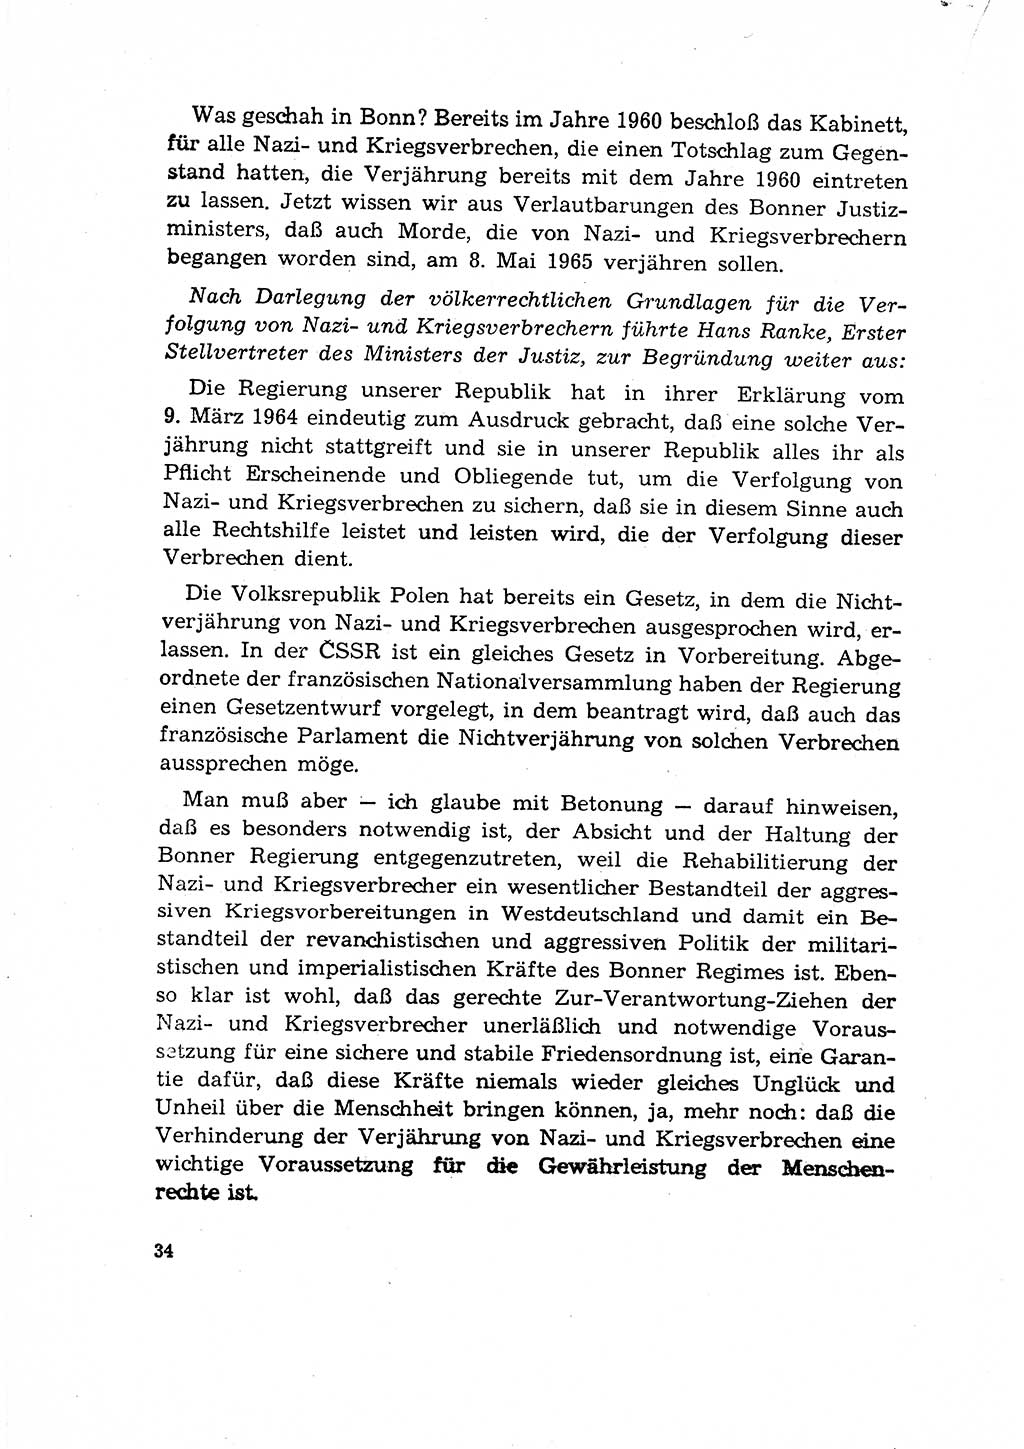 Bestrafung der Nazi- und Kriegsverbrecher [Deutsche Demokratische Republik (DDR)] 1964, Seite 34 (Bestr. Nazi-Kr.-Verbr. DDR 1964, S. 34)